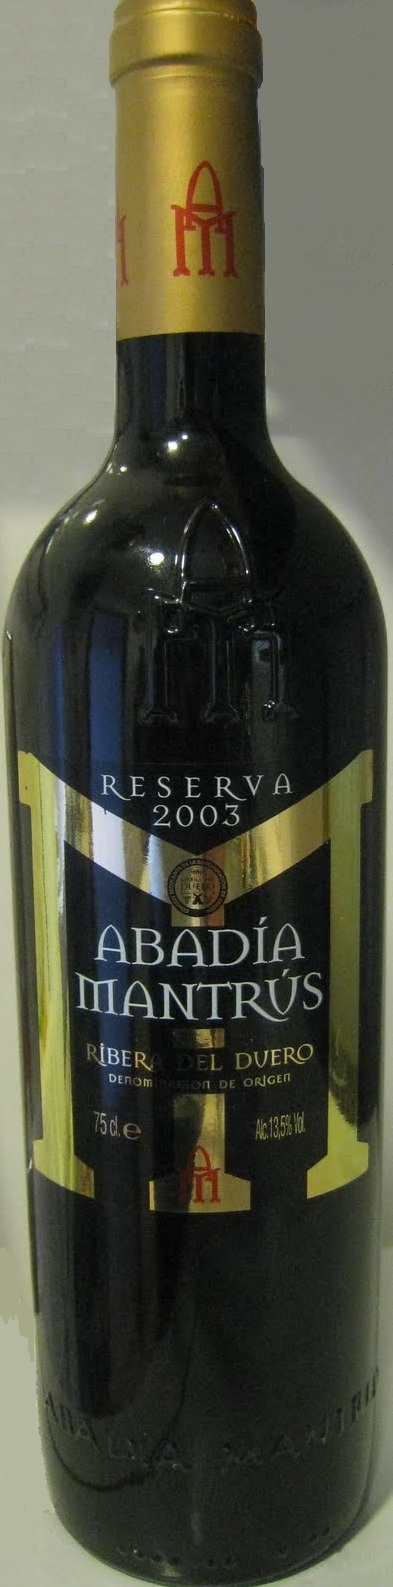 Imagen de la botella de Vino Abadía Mantrus Tinto Reserva